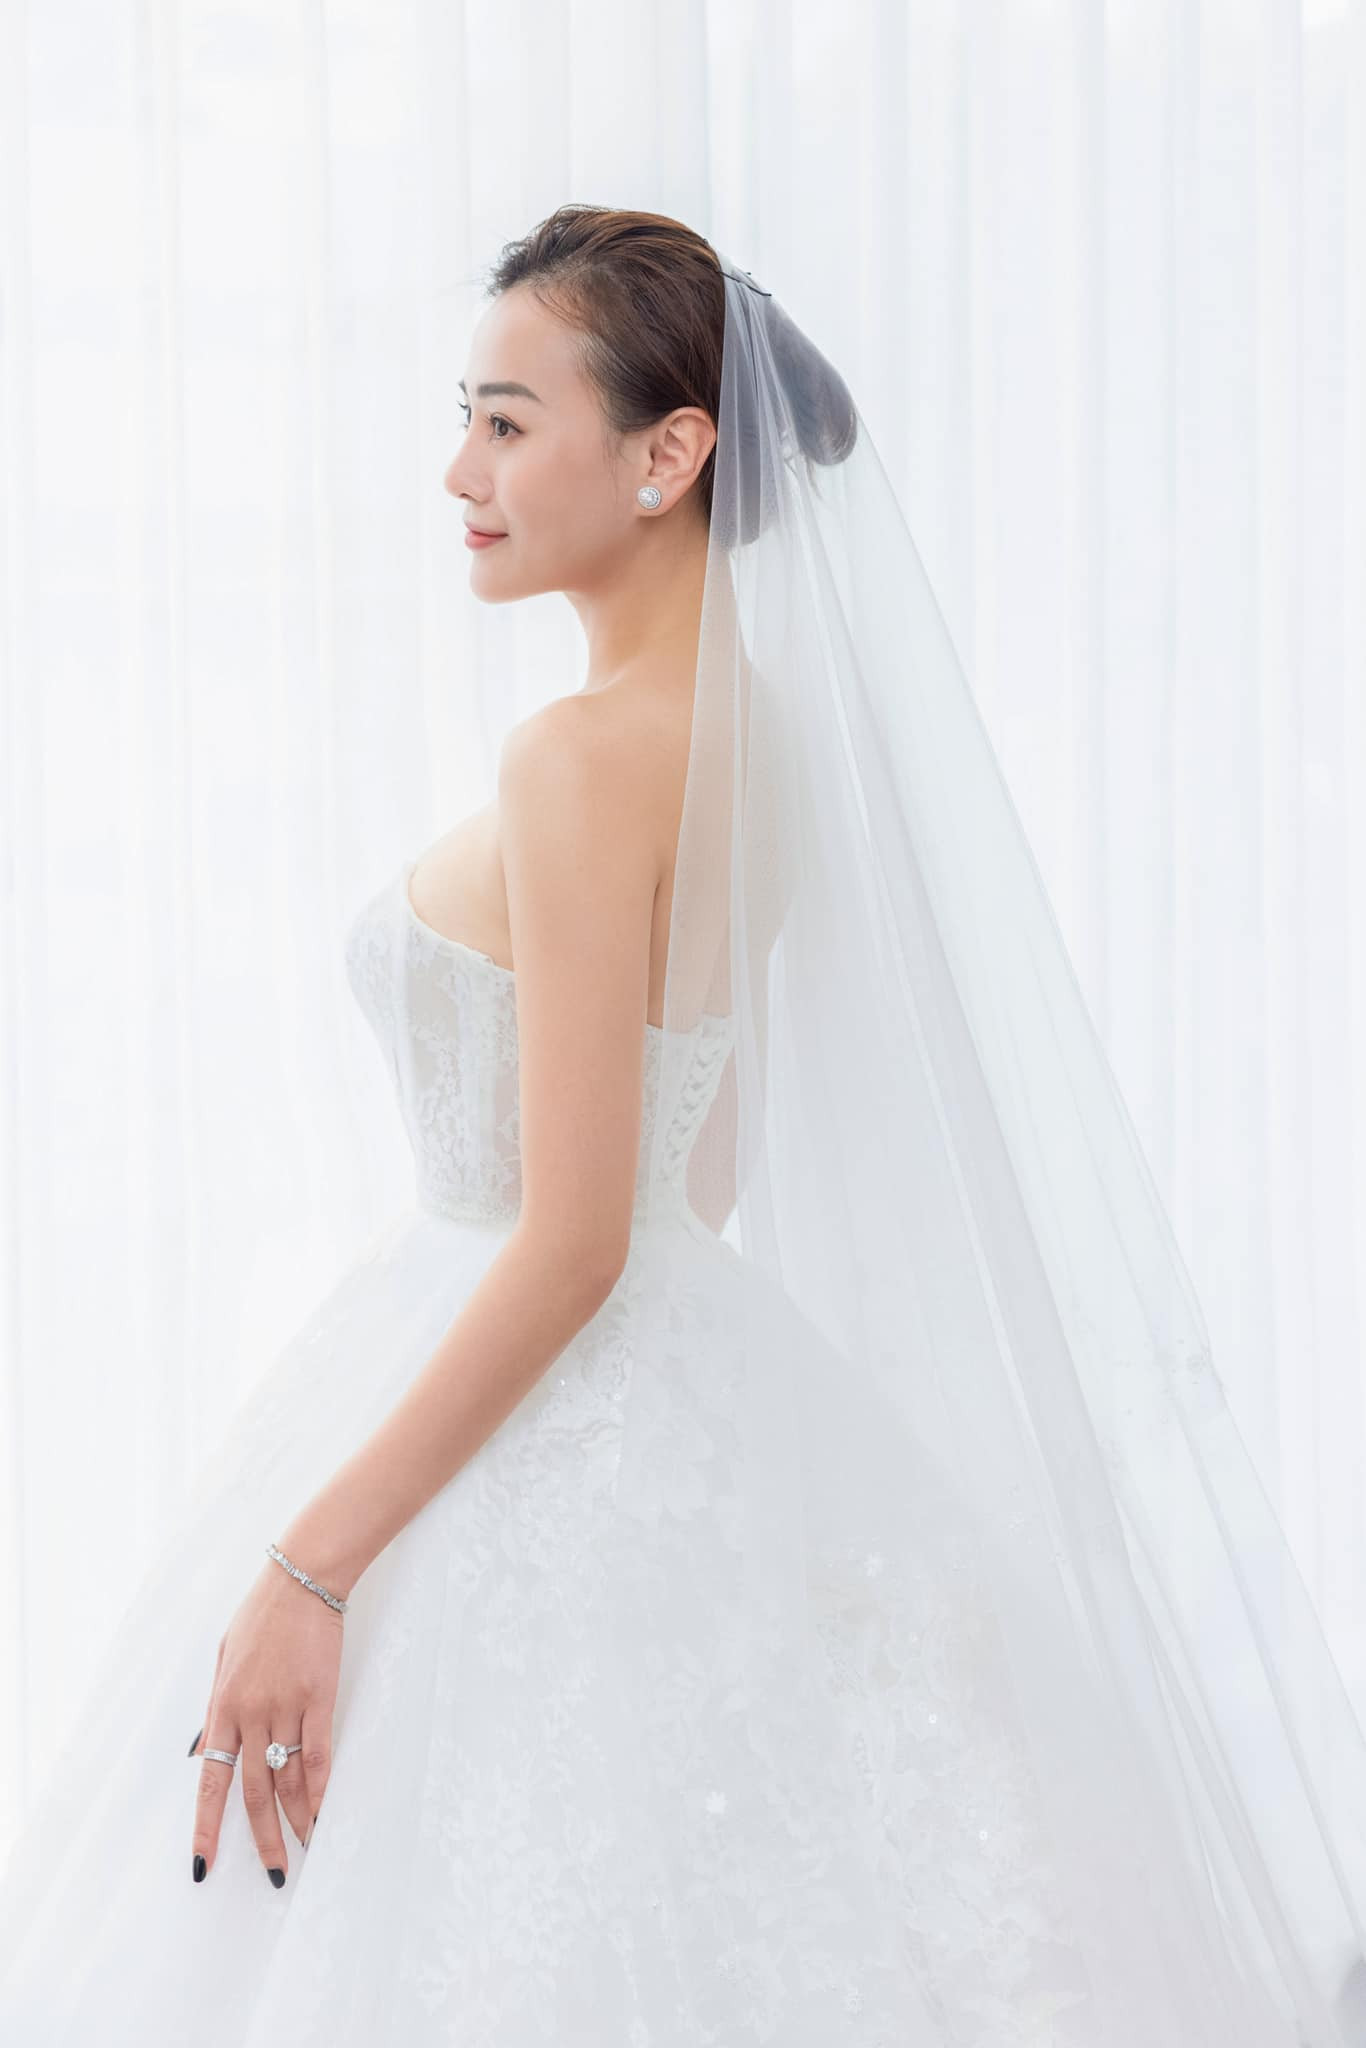 Phương Oanh đi thử váy cưới, chuẩn bị cho ngày trọng đại với Shark Bình-3